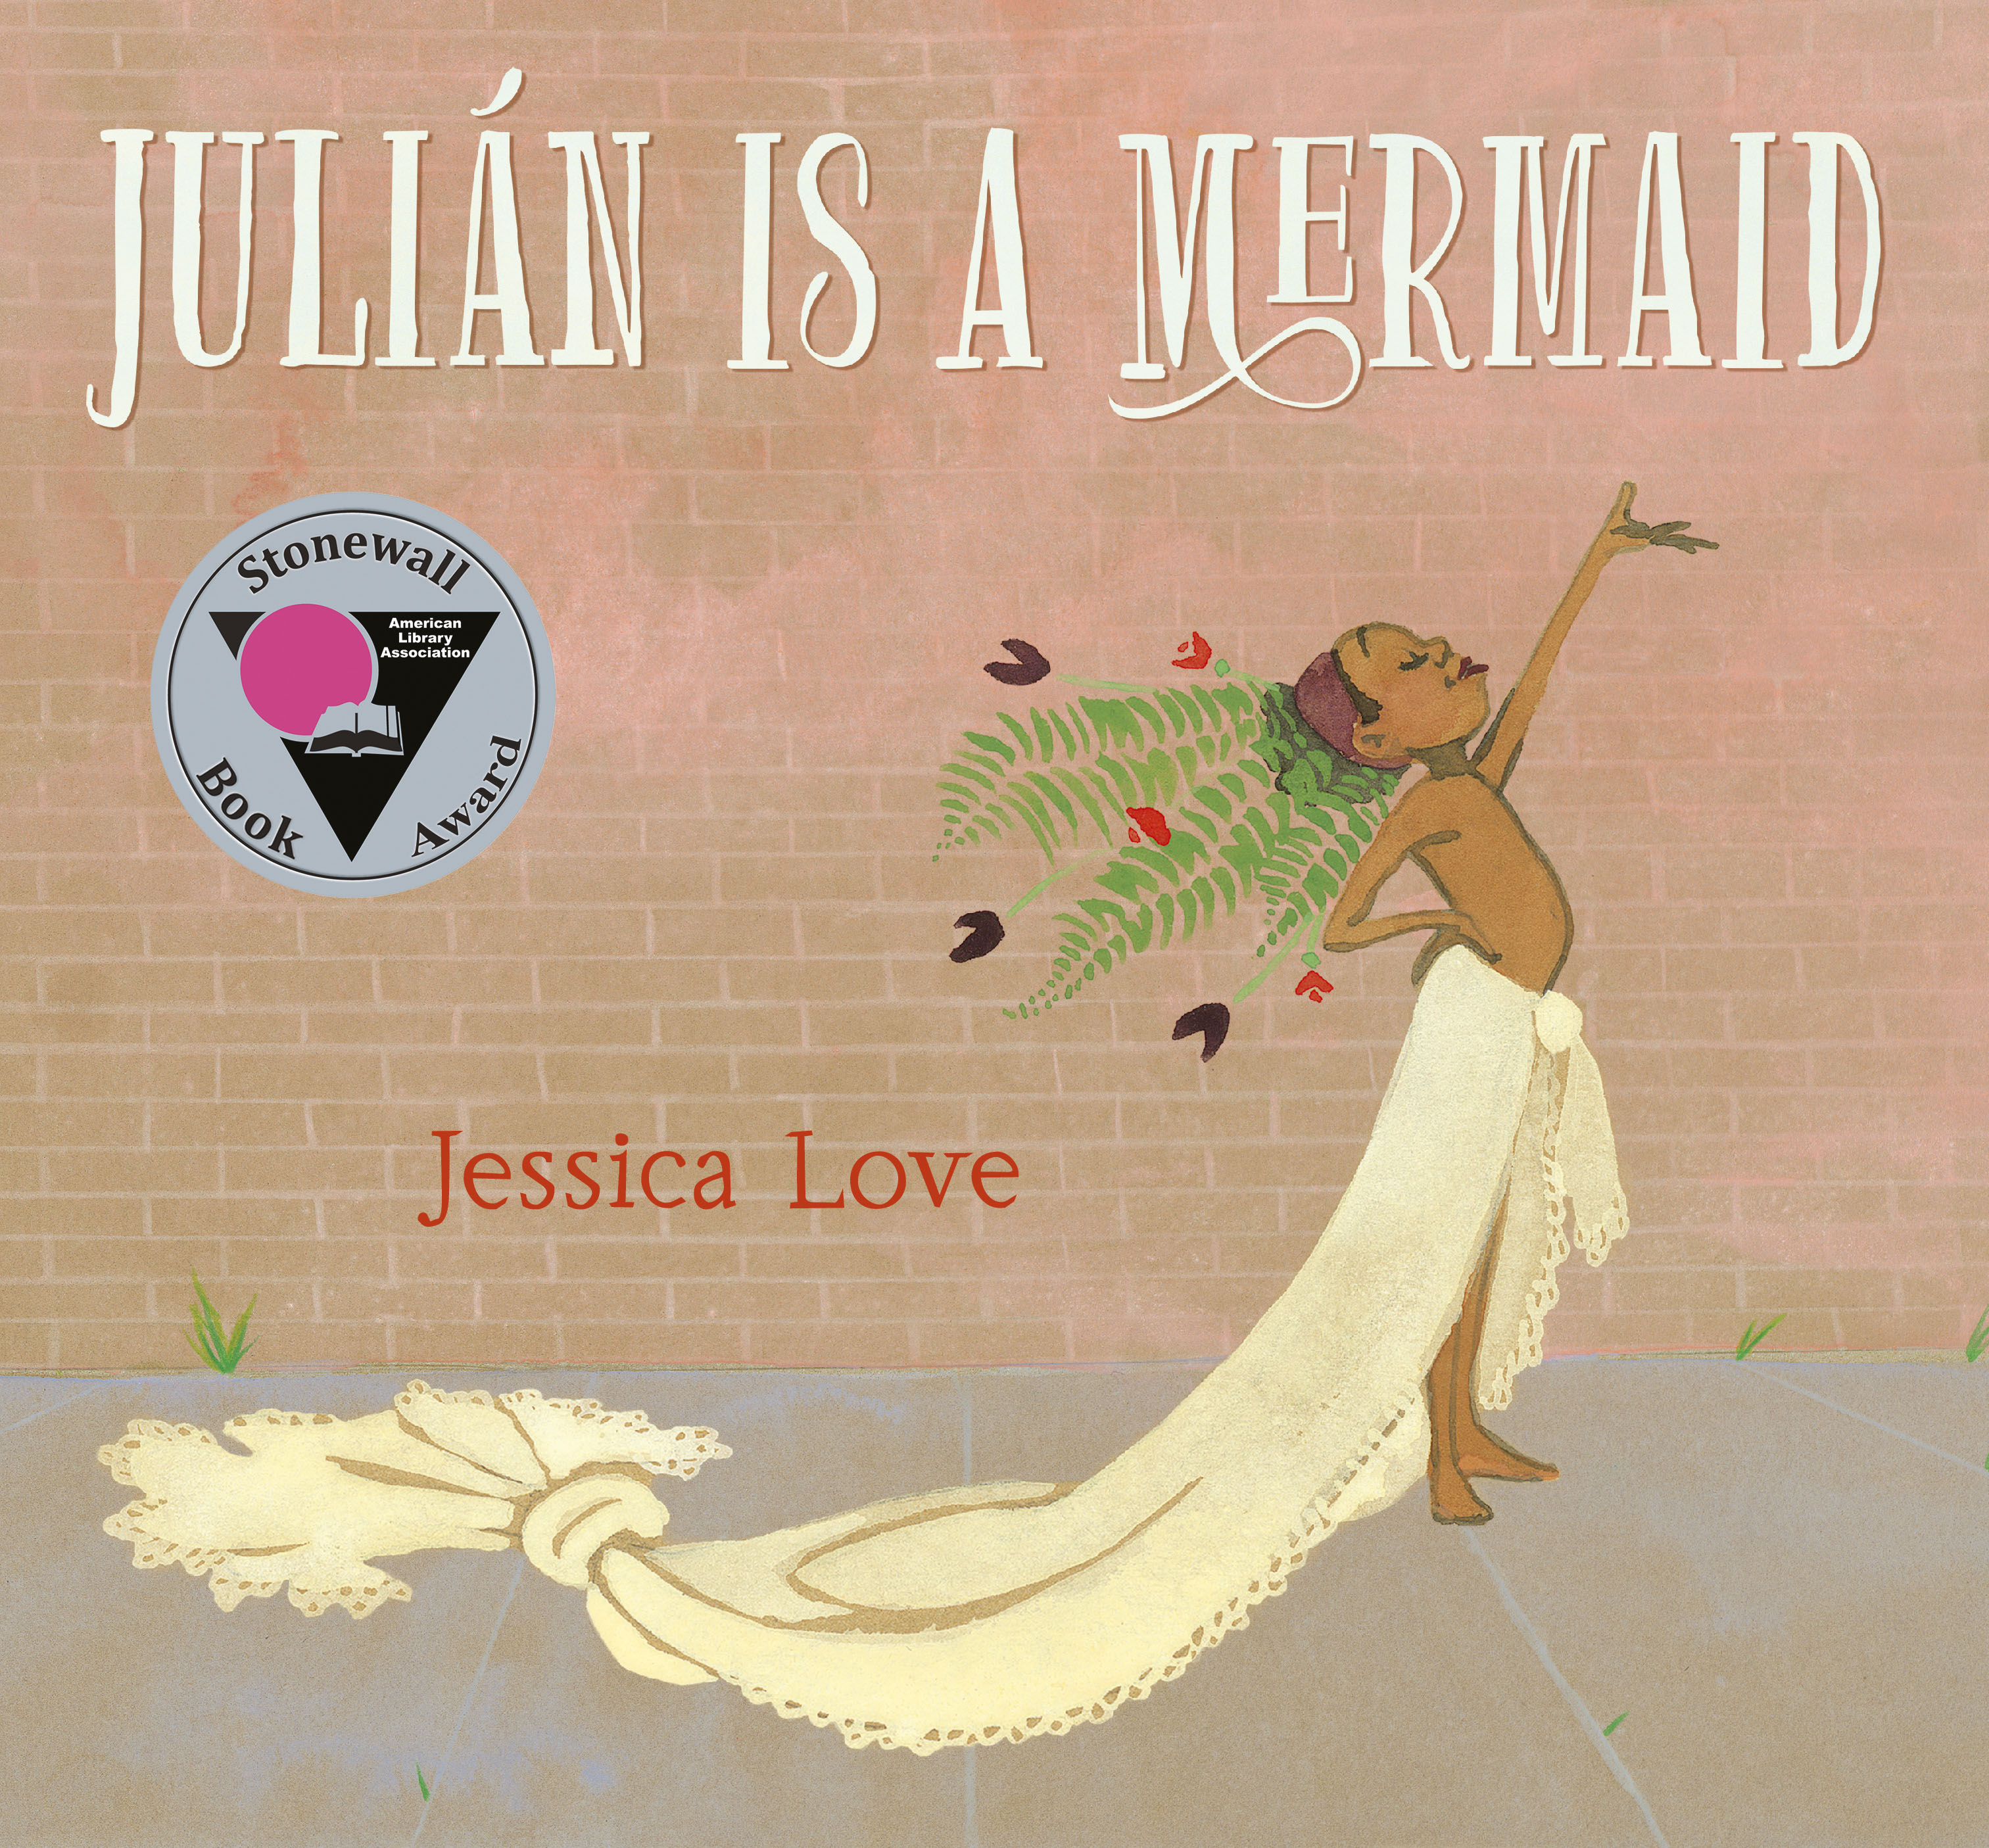 『ジュリアン』の表紙の画像は、人魚の衣装を着て腕を高く上げた子供を描いた「人魚」とストーンウォール書籍賞です。